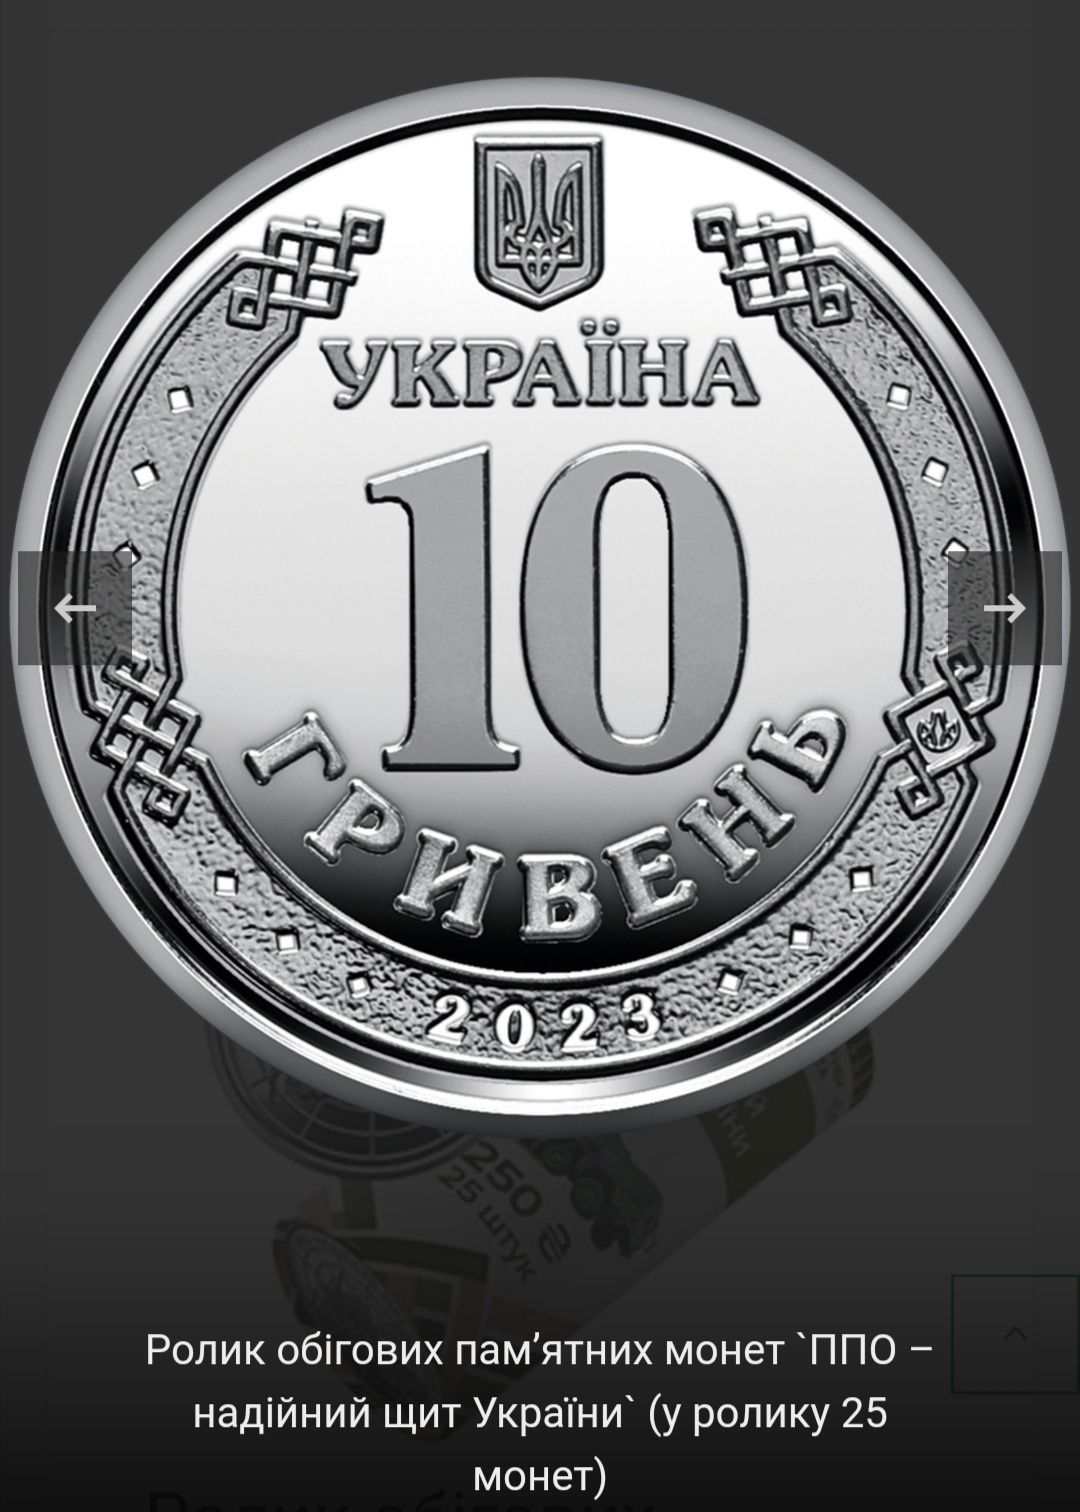 Рол обігових монет " ППО - надійний щит України "